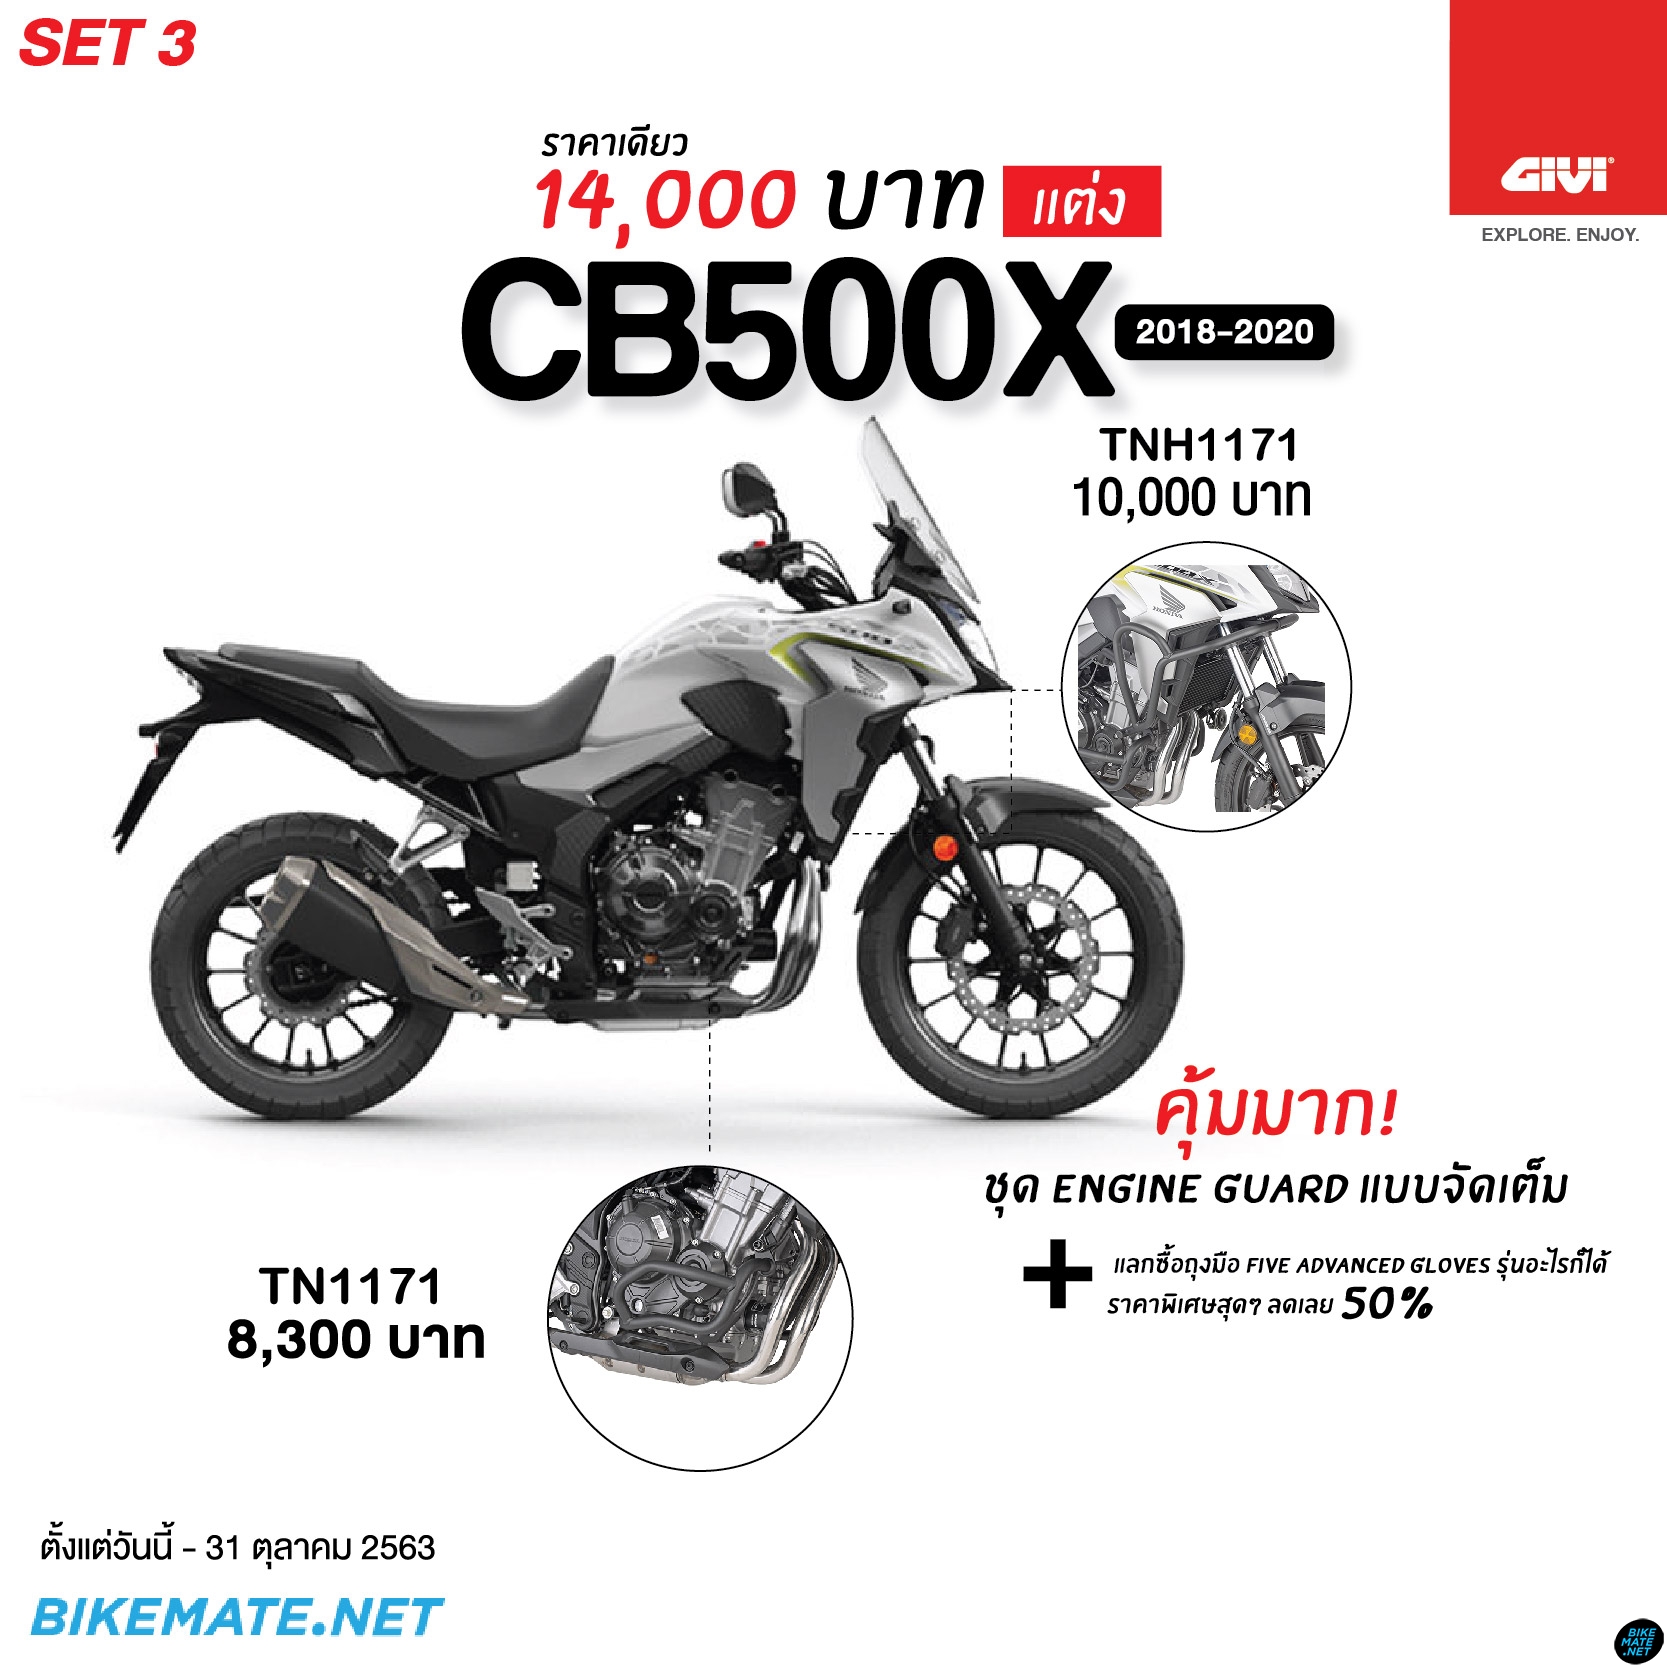 Honda CB500X 2018-2020 Set 3